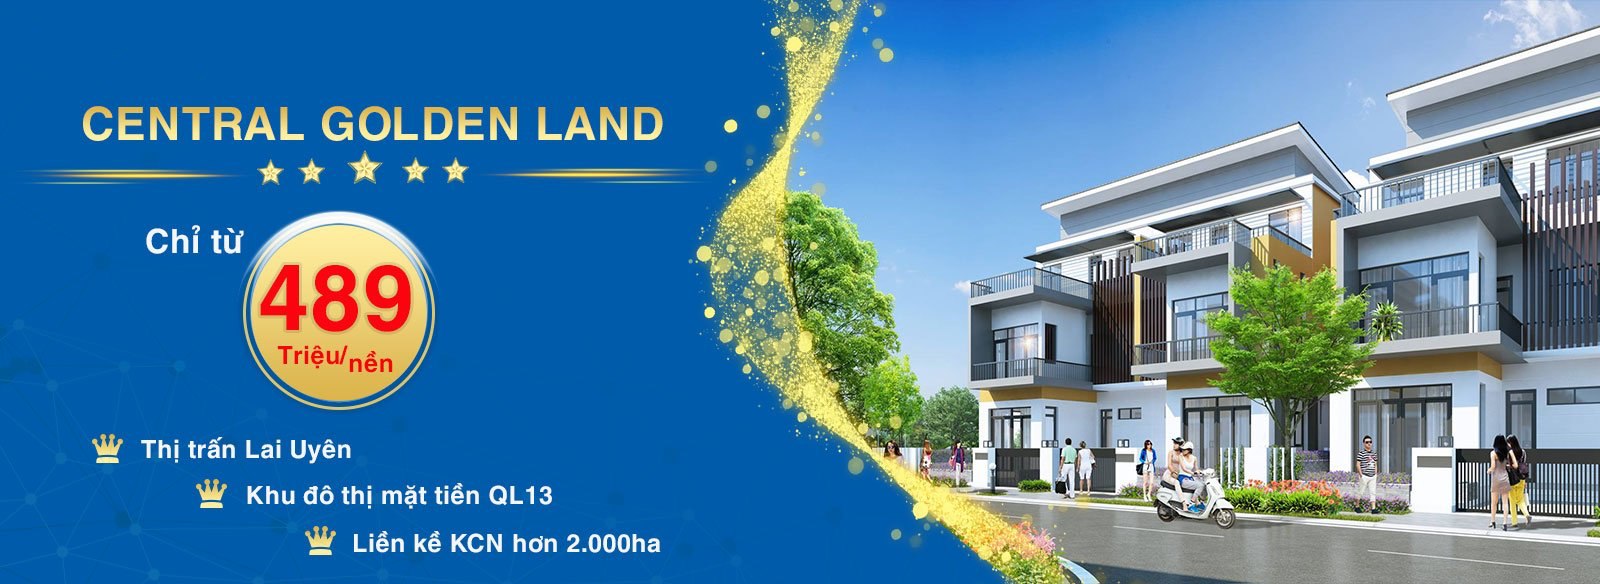 Thông tin mở bán dự án Central Golden Land tại thời điểm tháng 6/2021